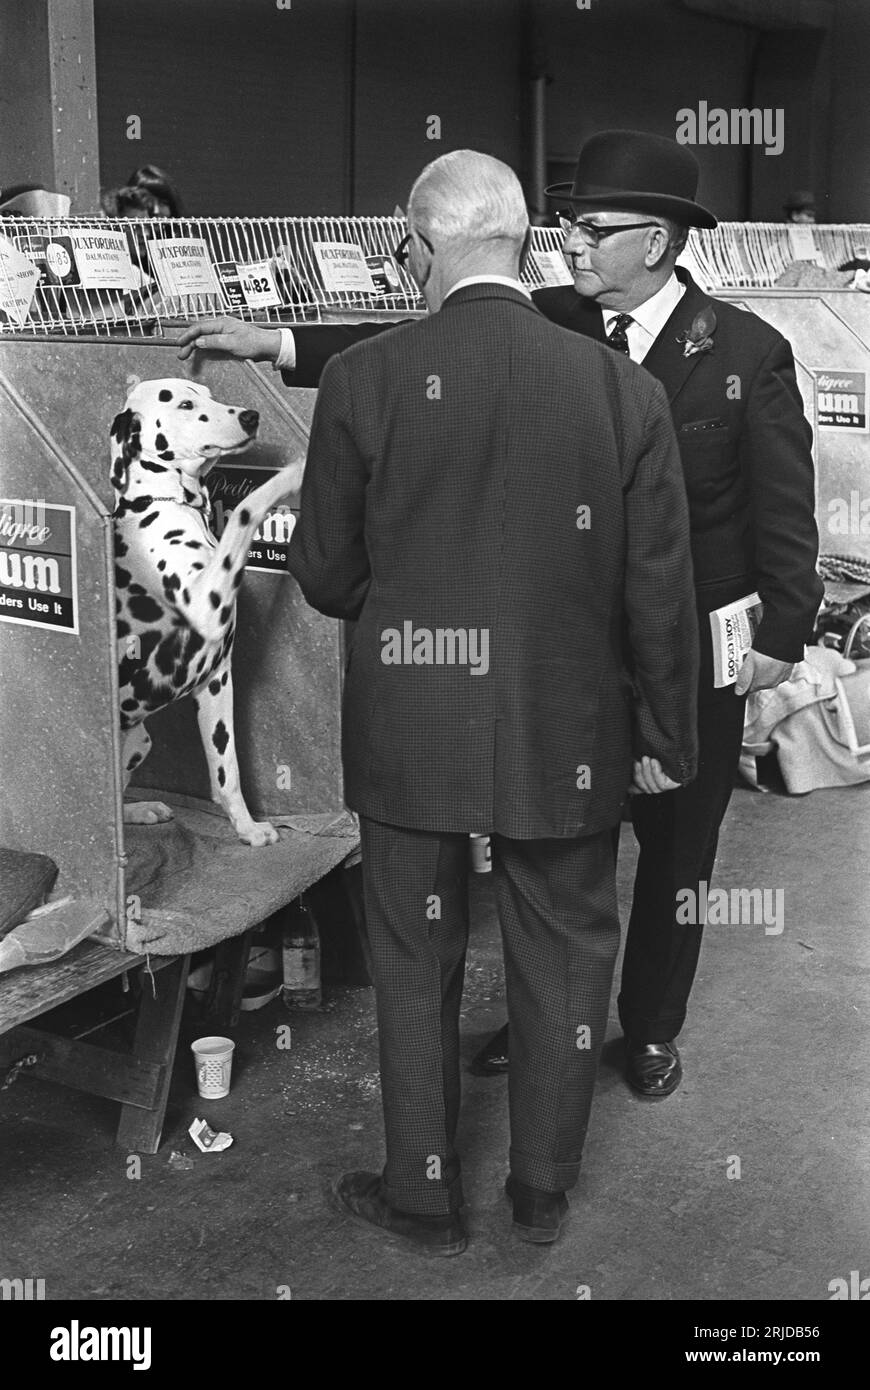 Crufts Dog Show 1960s UK. Il centro esposizioni Olympia. Due uomini che giocano a parlare con un cane dalmata. Earls Court, Londra, Inghilterra, febbraio 1968. HOMER SYKES. Foto Stock